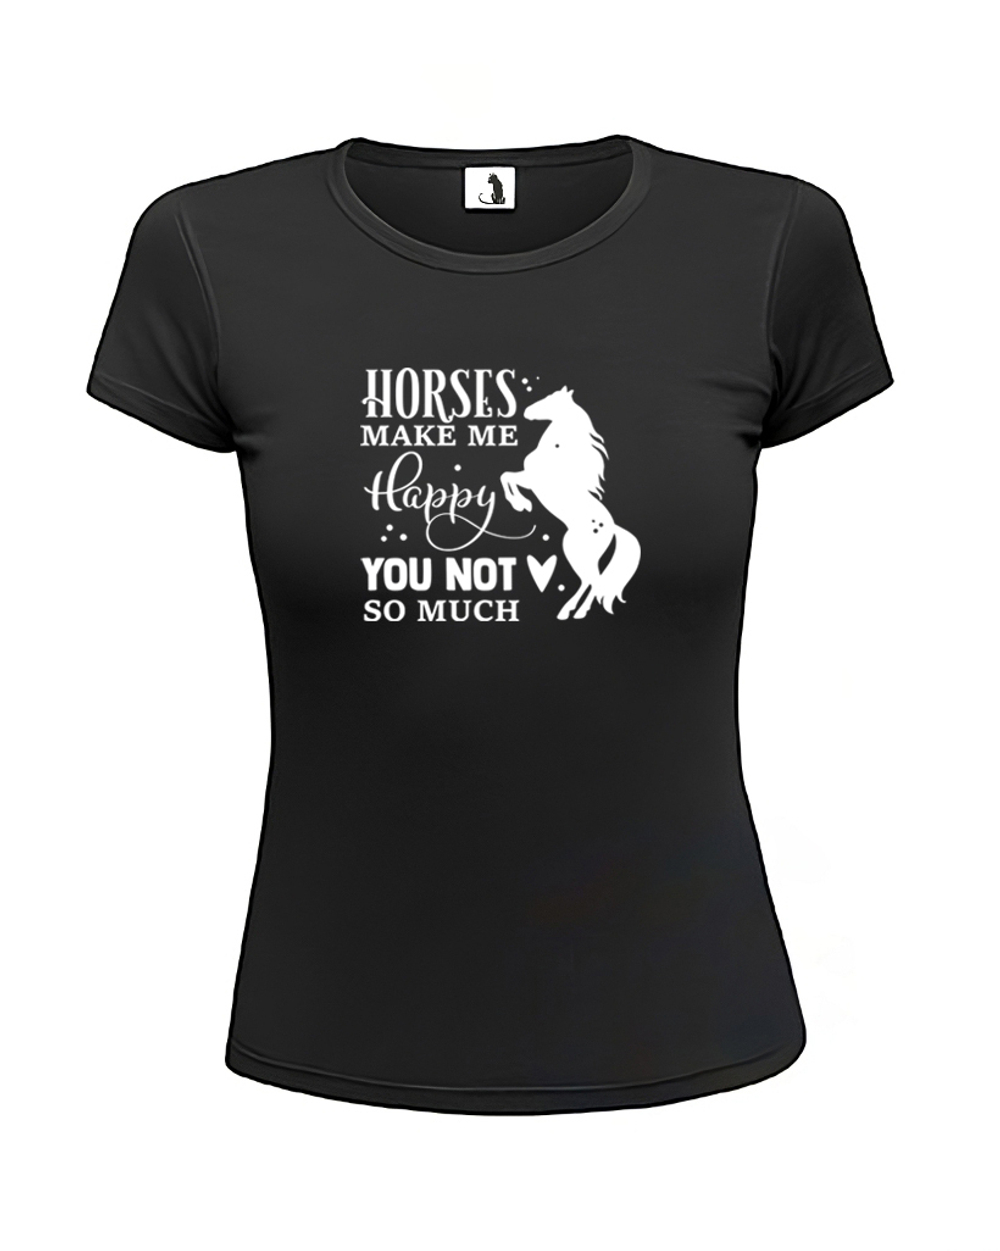 Футболка Horses make me happy женская приталенная черная с белым рисунком